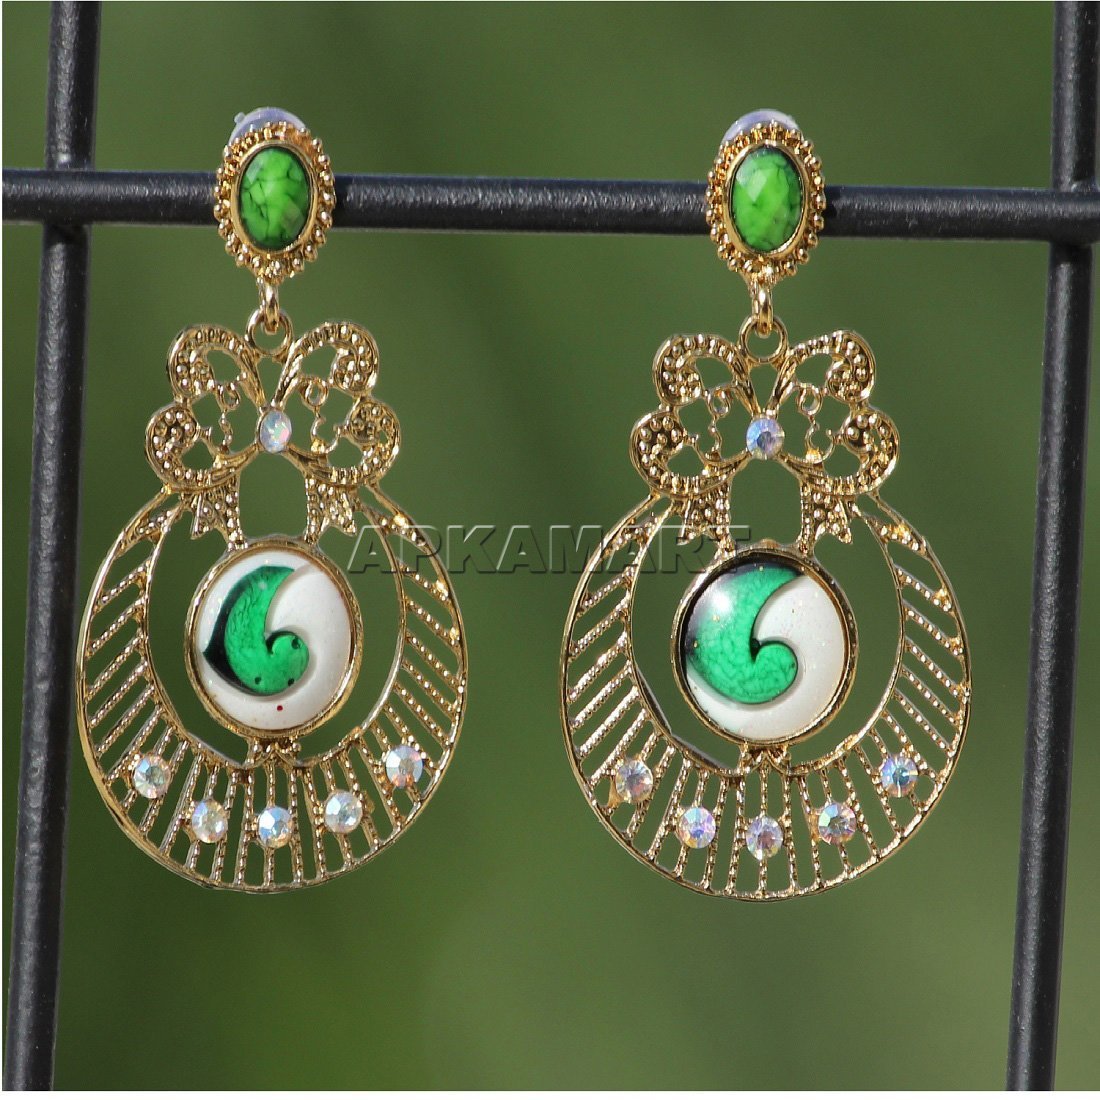 Earring Stud - Floral Drop Earrings Green -  Jewellery For Women & Girls - ApkaMart